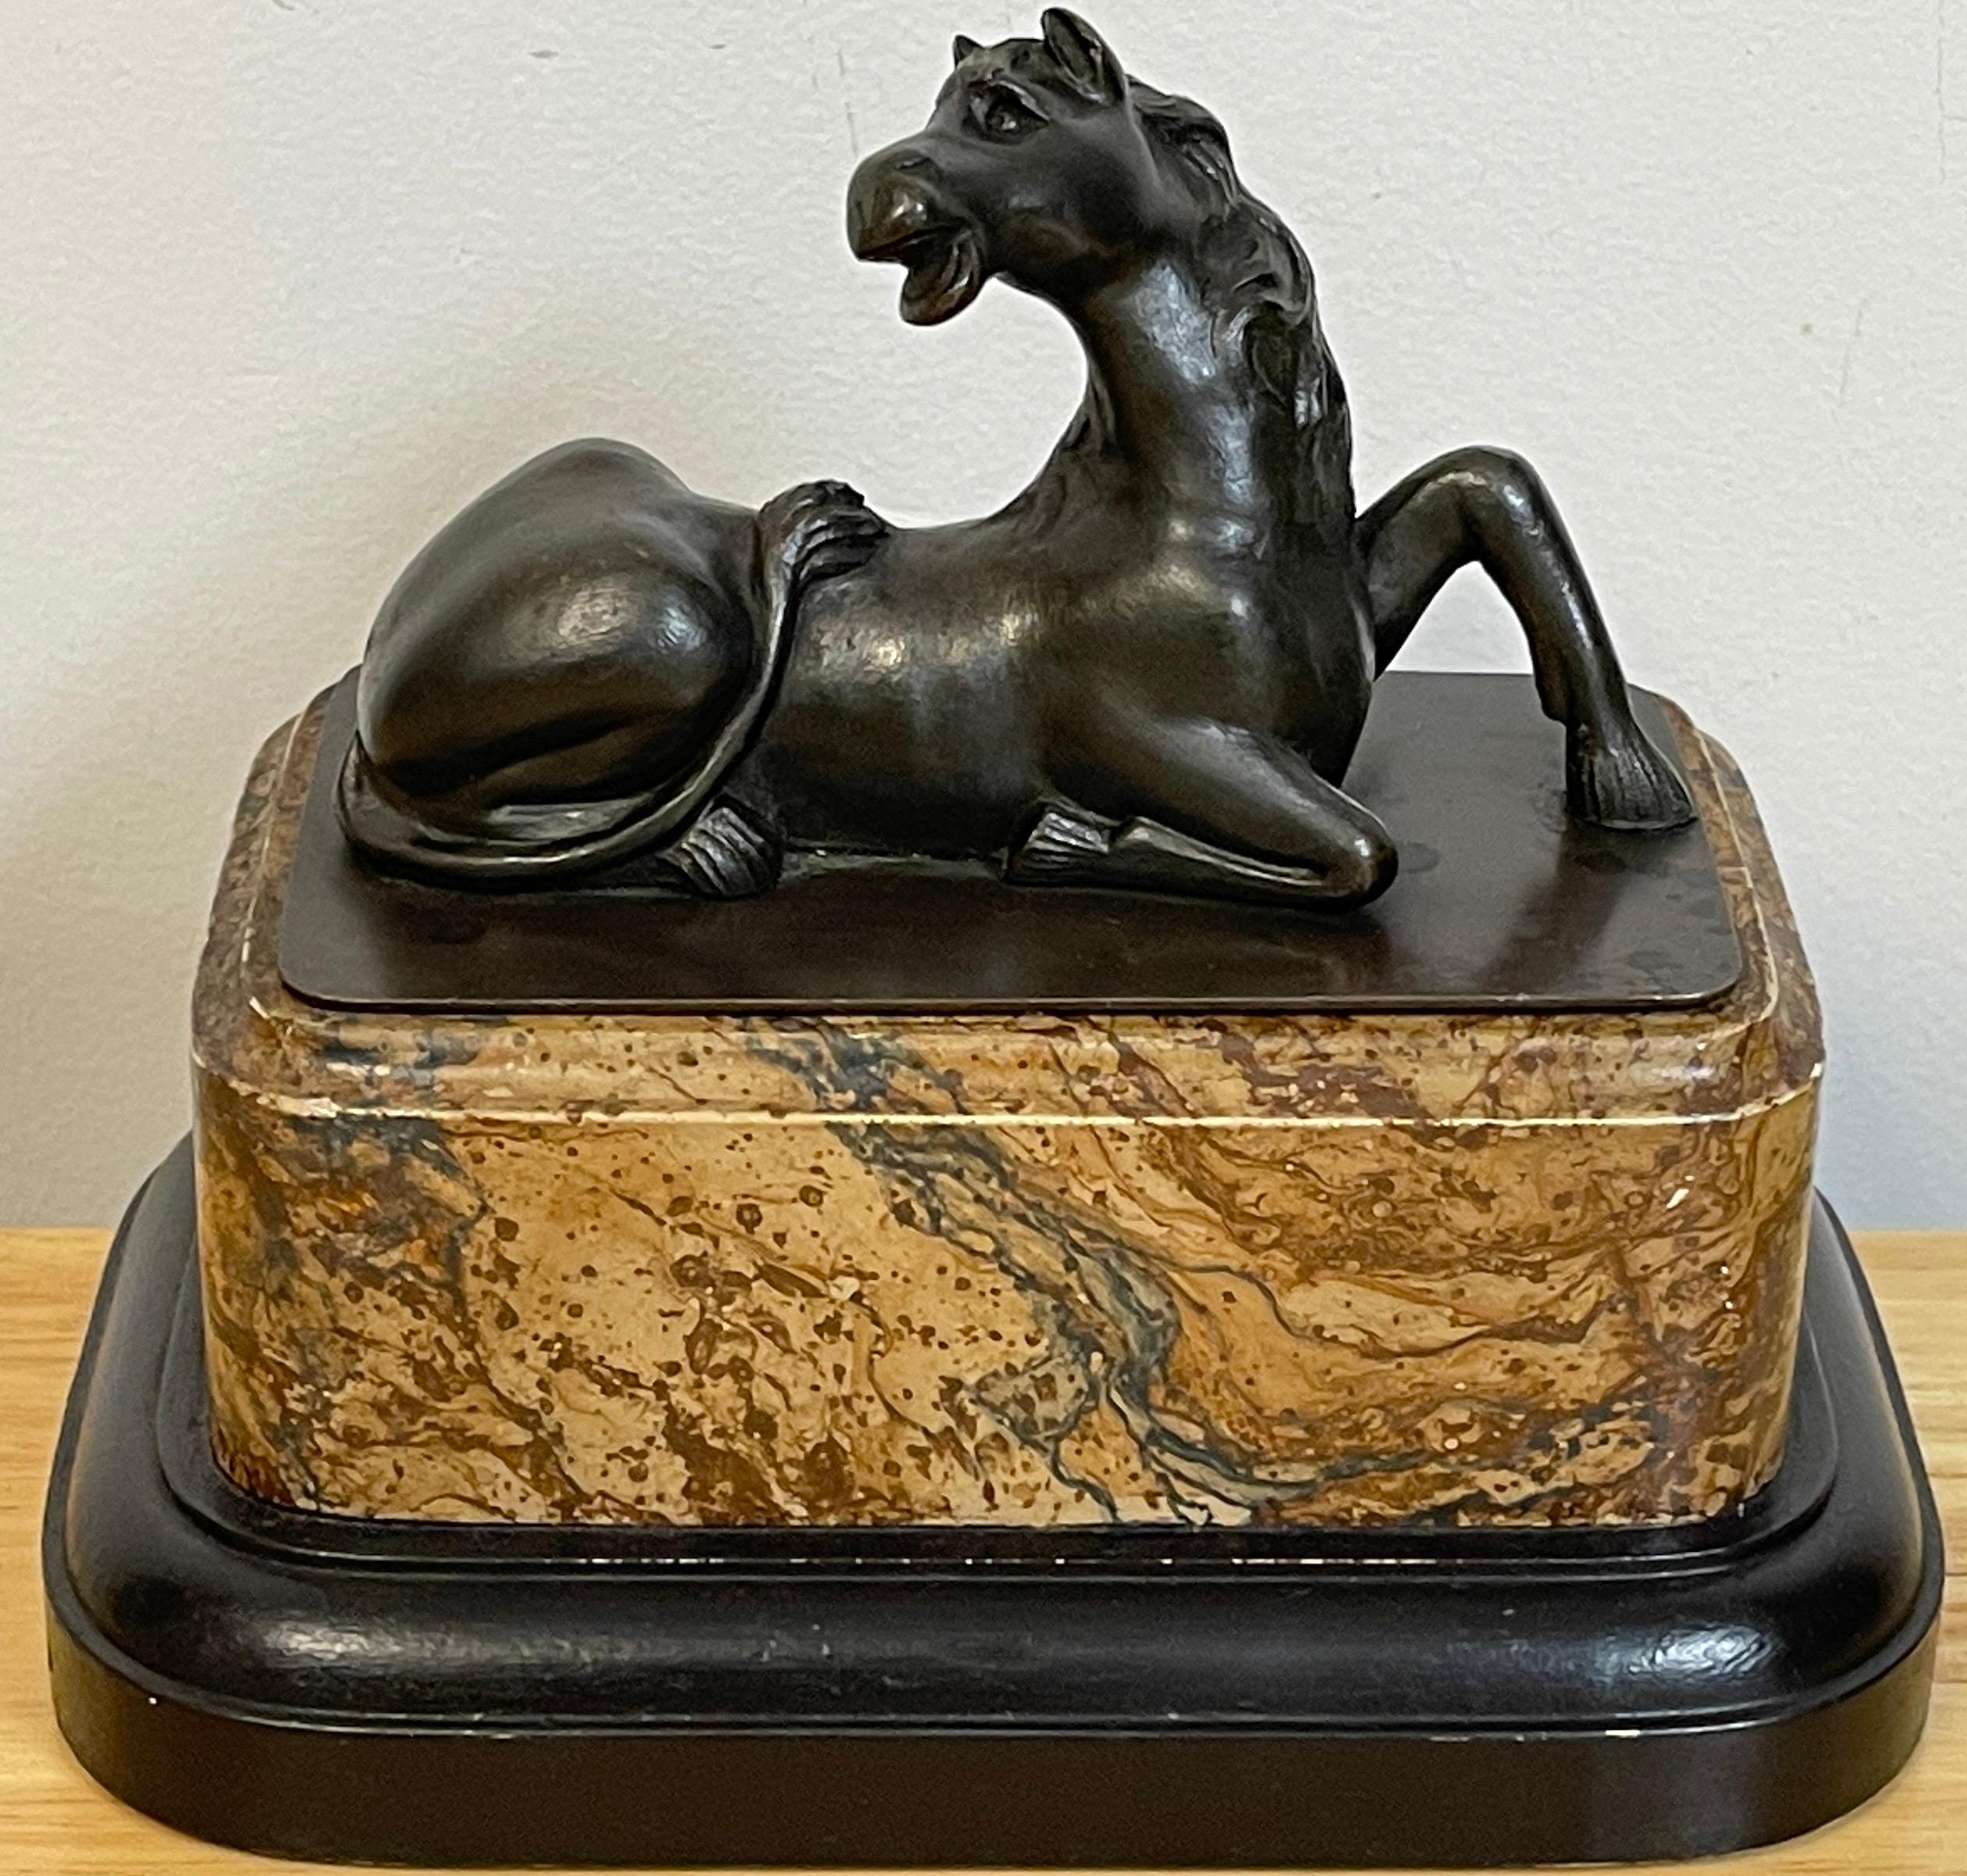 Grand Tour Bronzemodell eines liegenden Pferdes, realistisch gegossen und modelliert, erhöht auf einem unechten marmorierten Sockel.
 